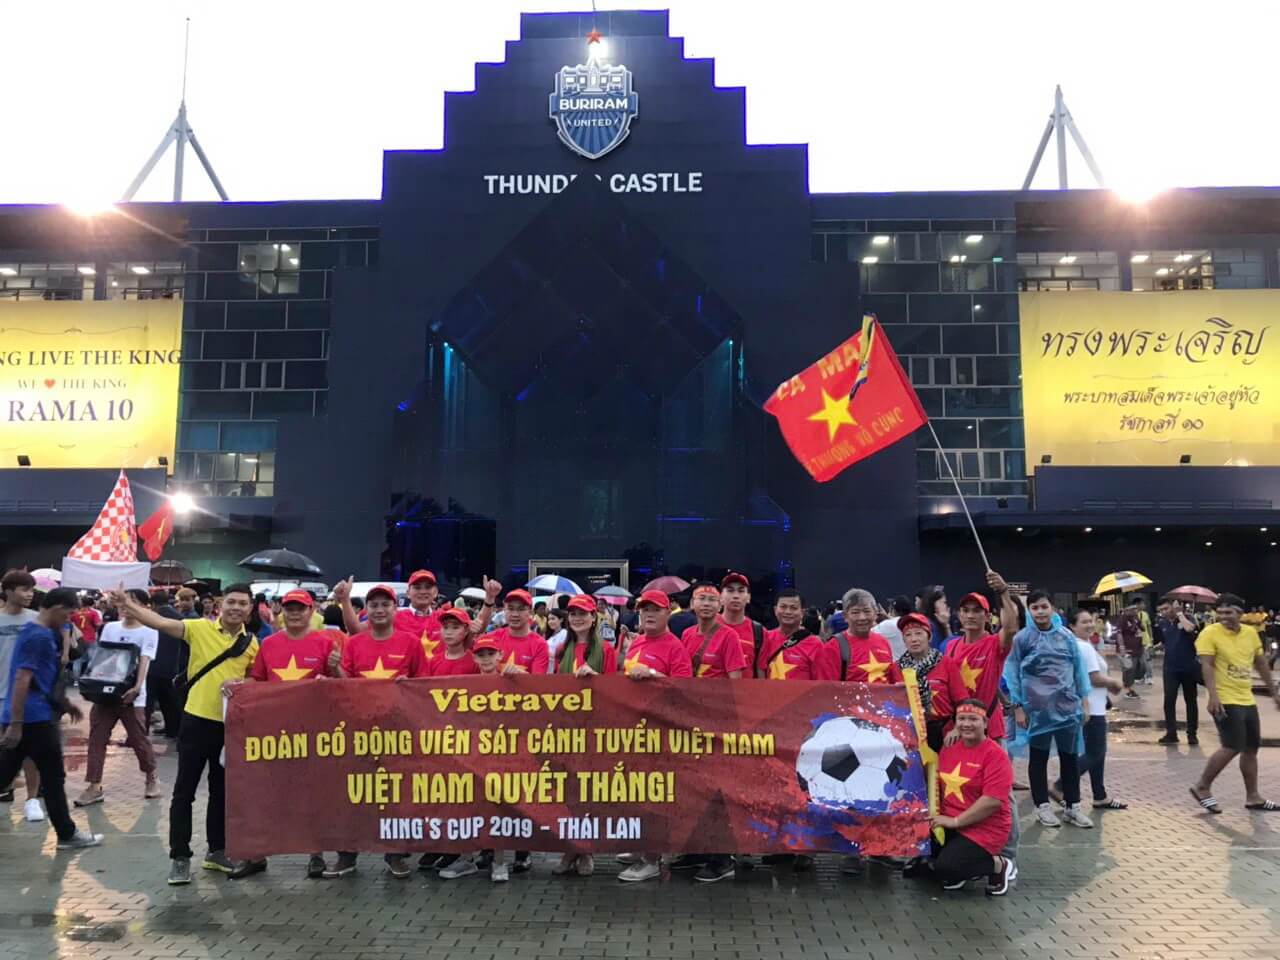 Bay ngay sang Thái, 'cháy' hết mình cùng đội tuyển Việt Nam tranh chức vô địch King’s Cup 2019